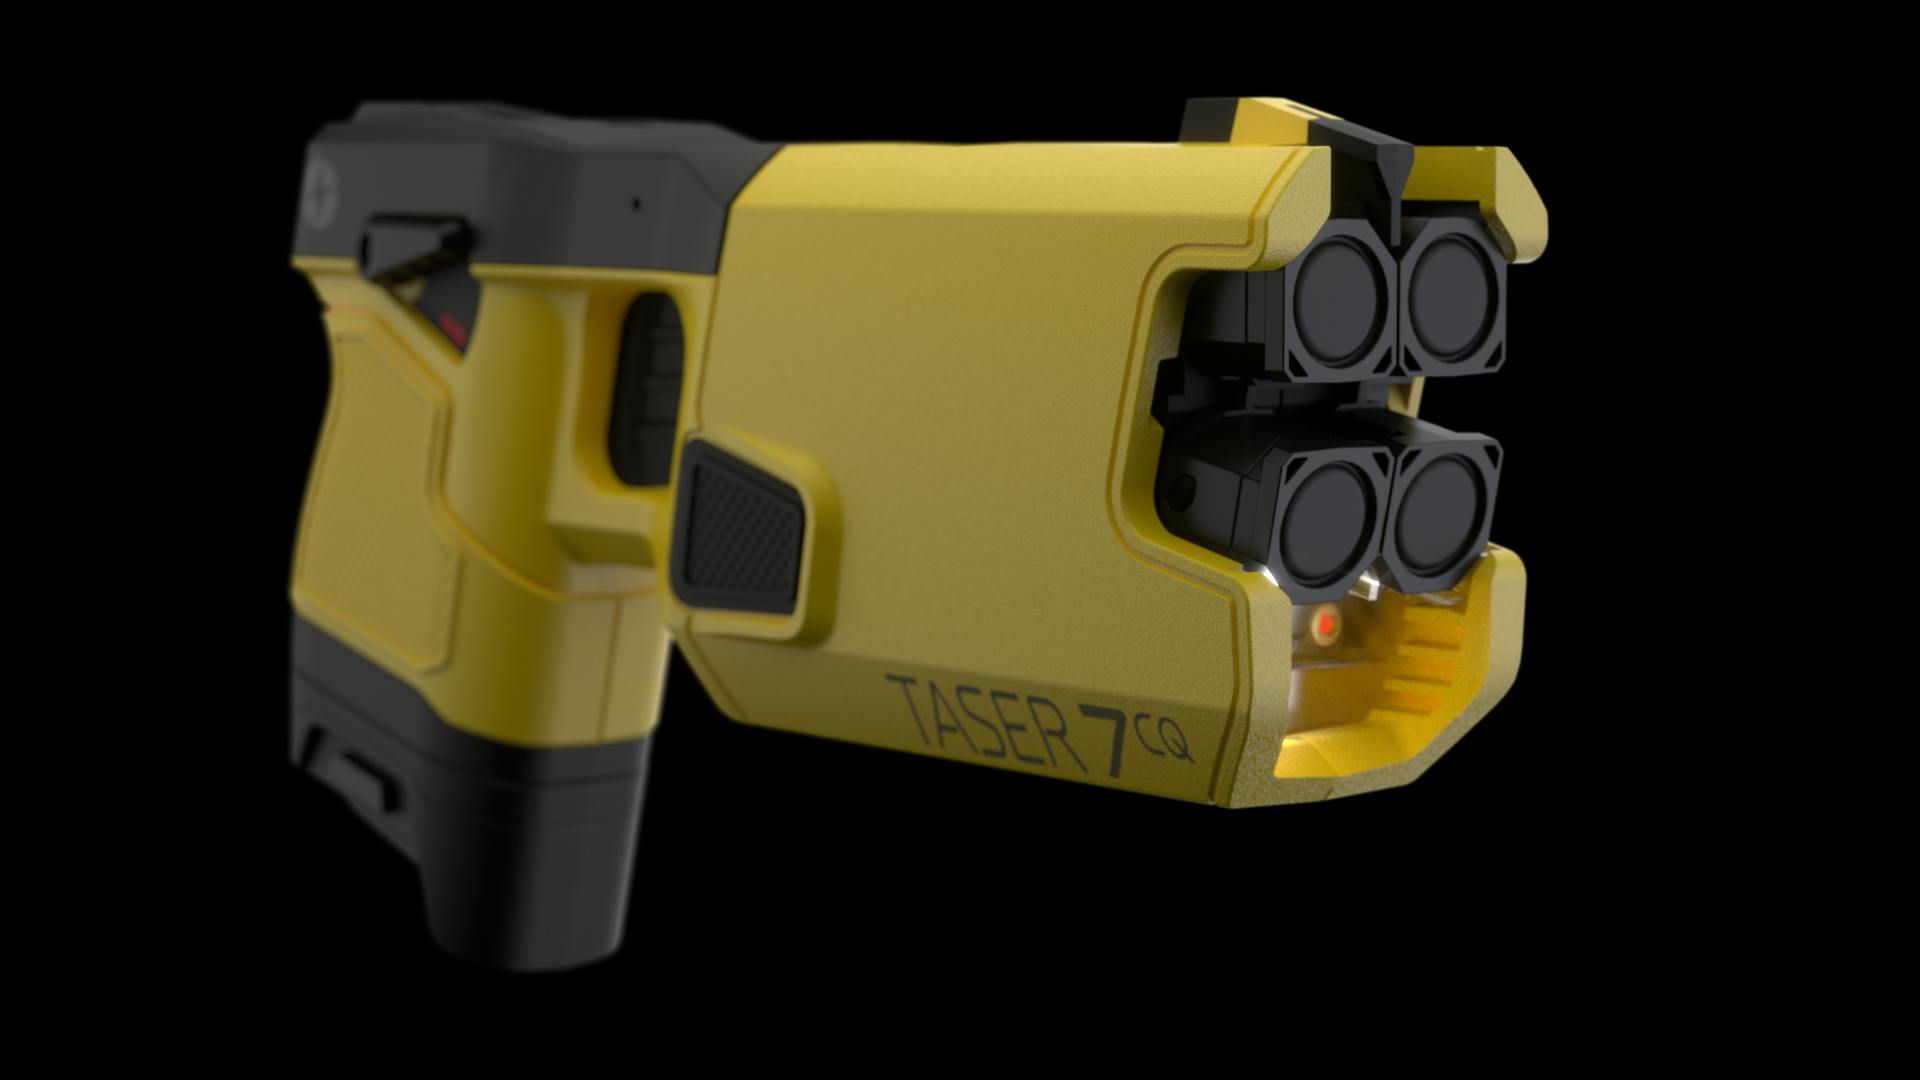 TASER 7 CQ Shooting Stun Gun